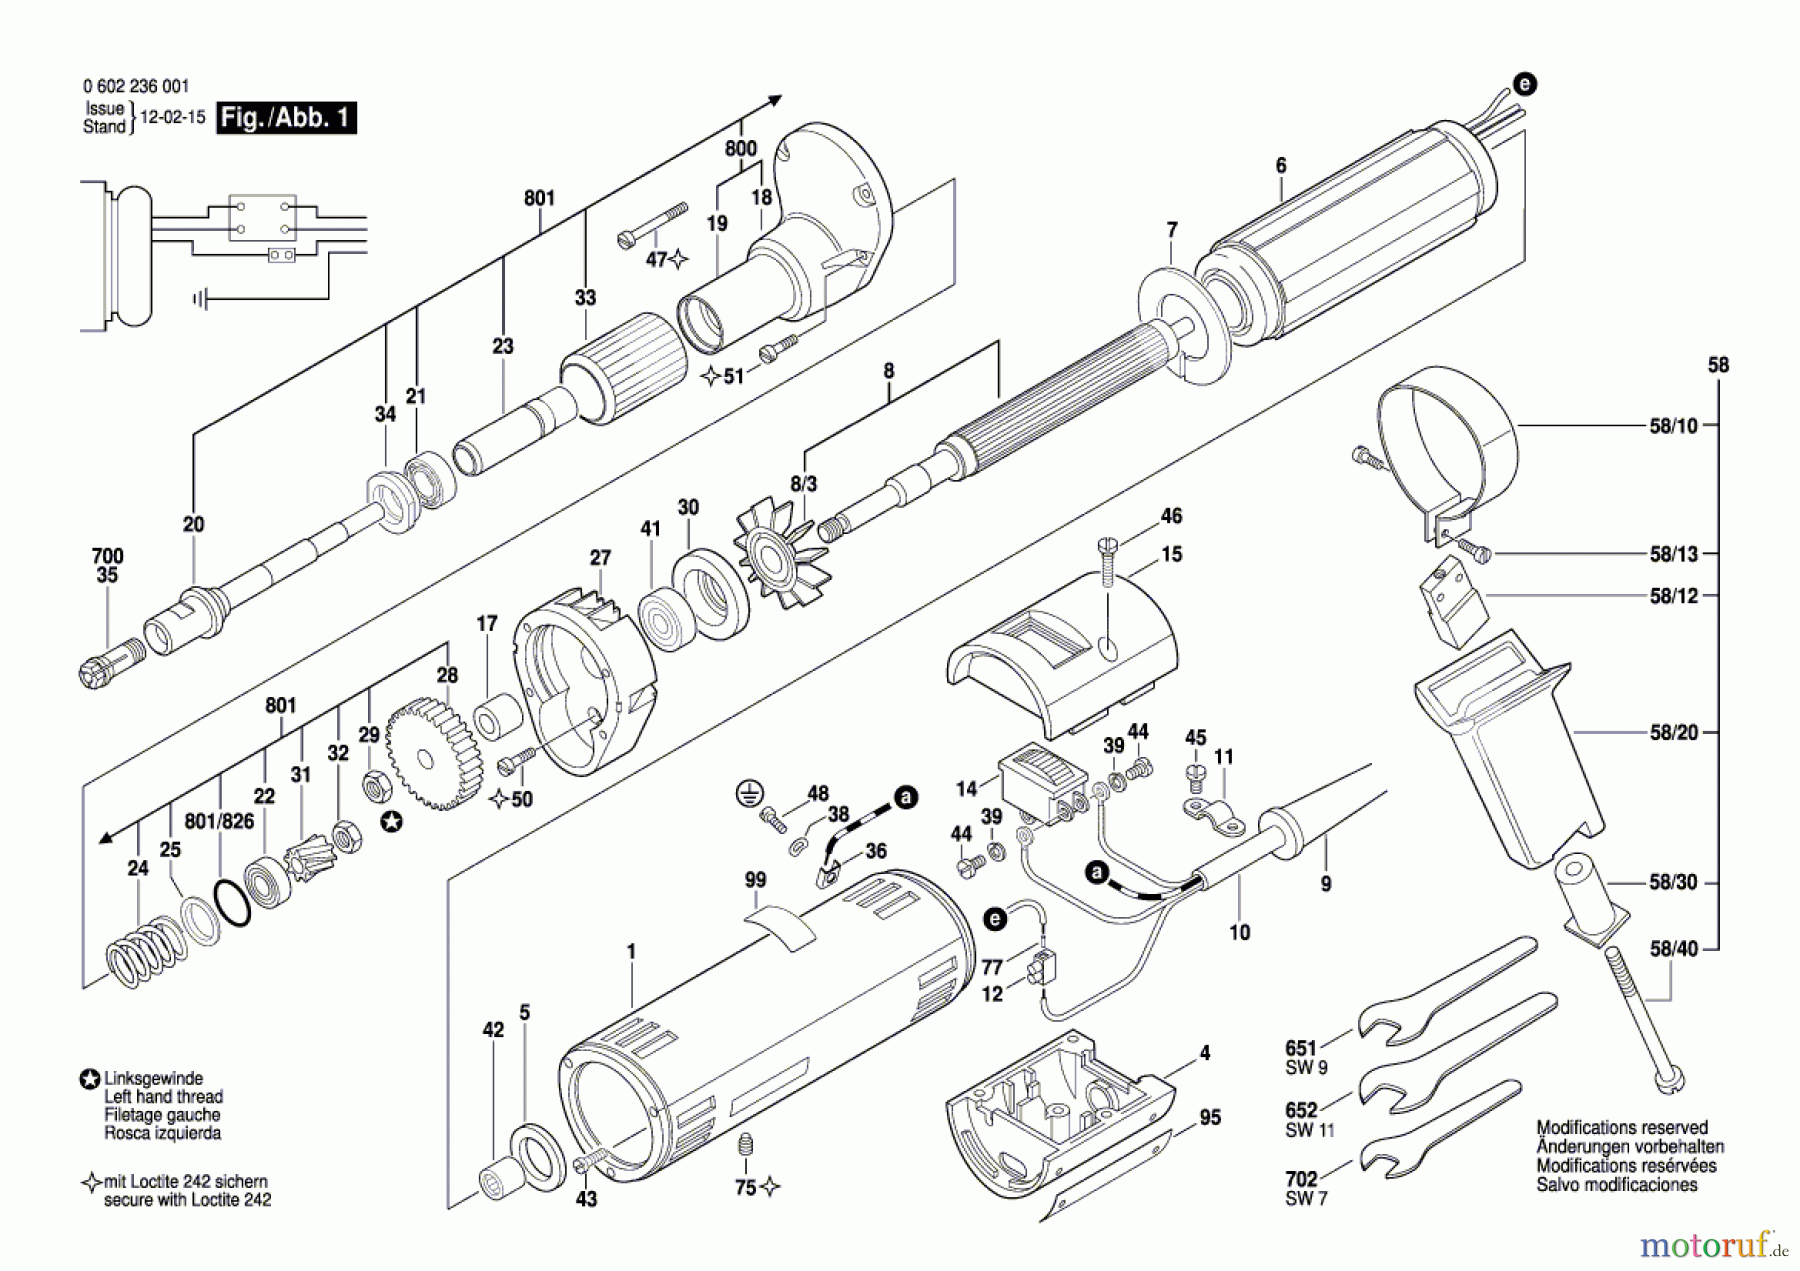  Bosch Werkzeug Hf-Geradschleifer GR.48 Seite 1